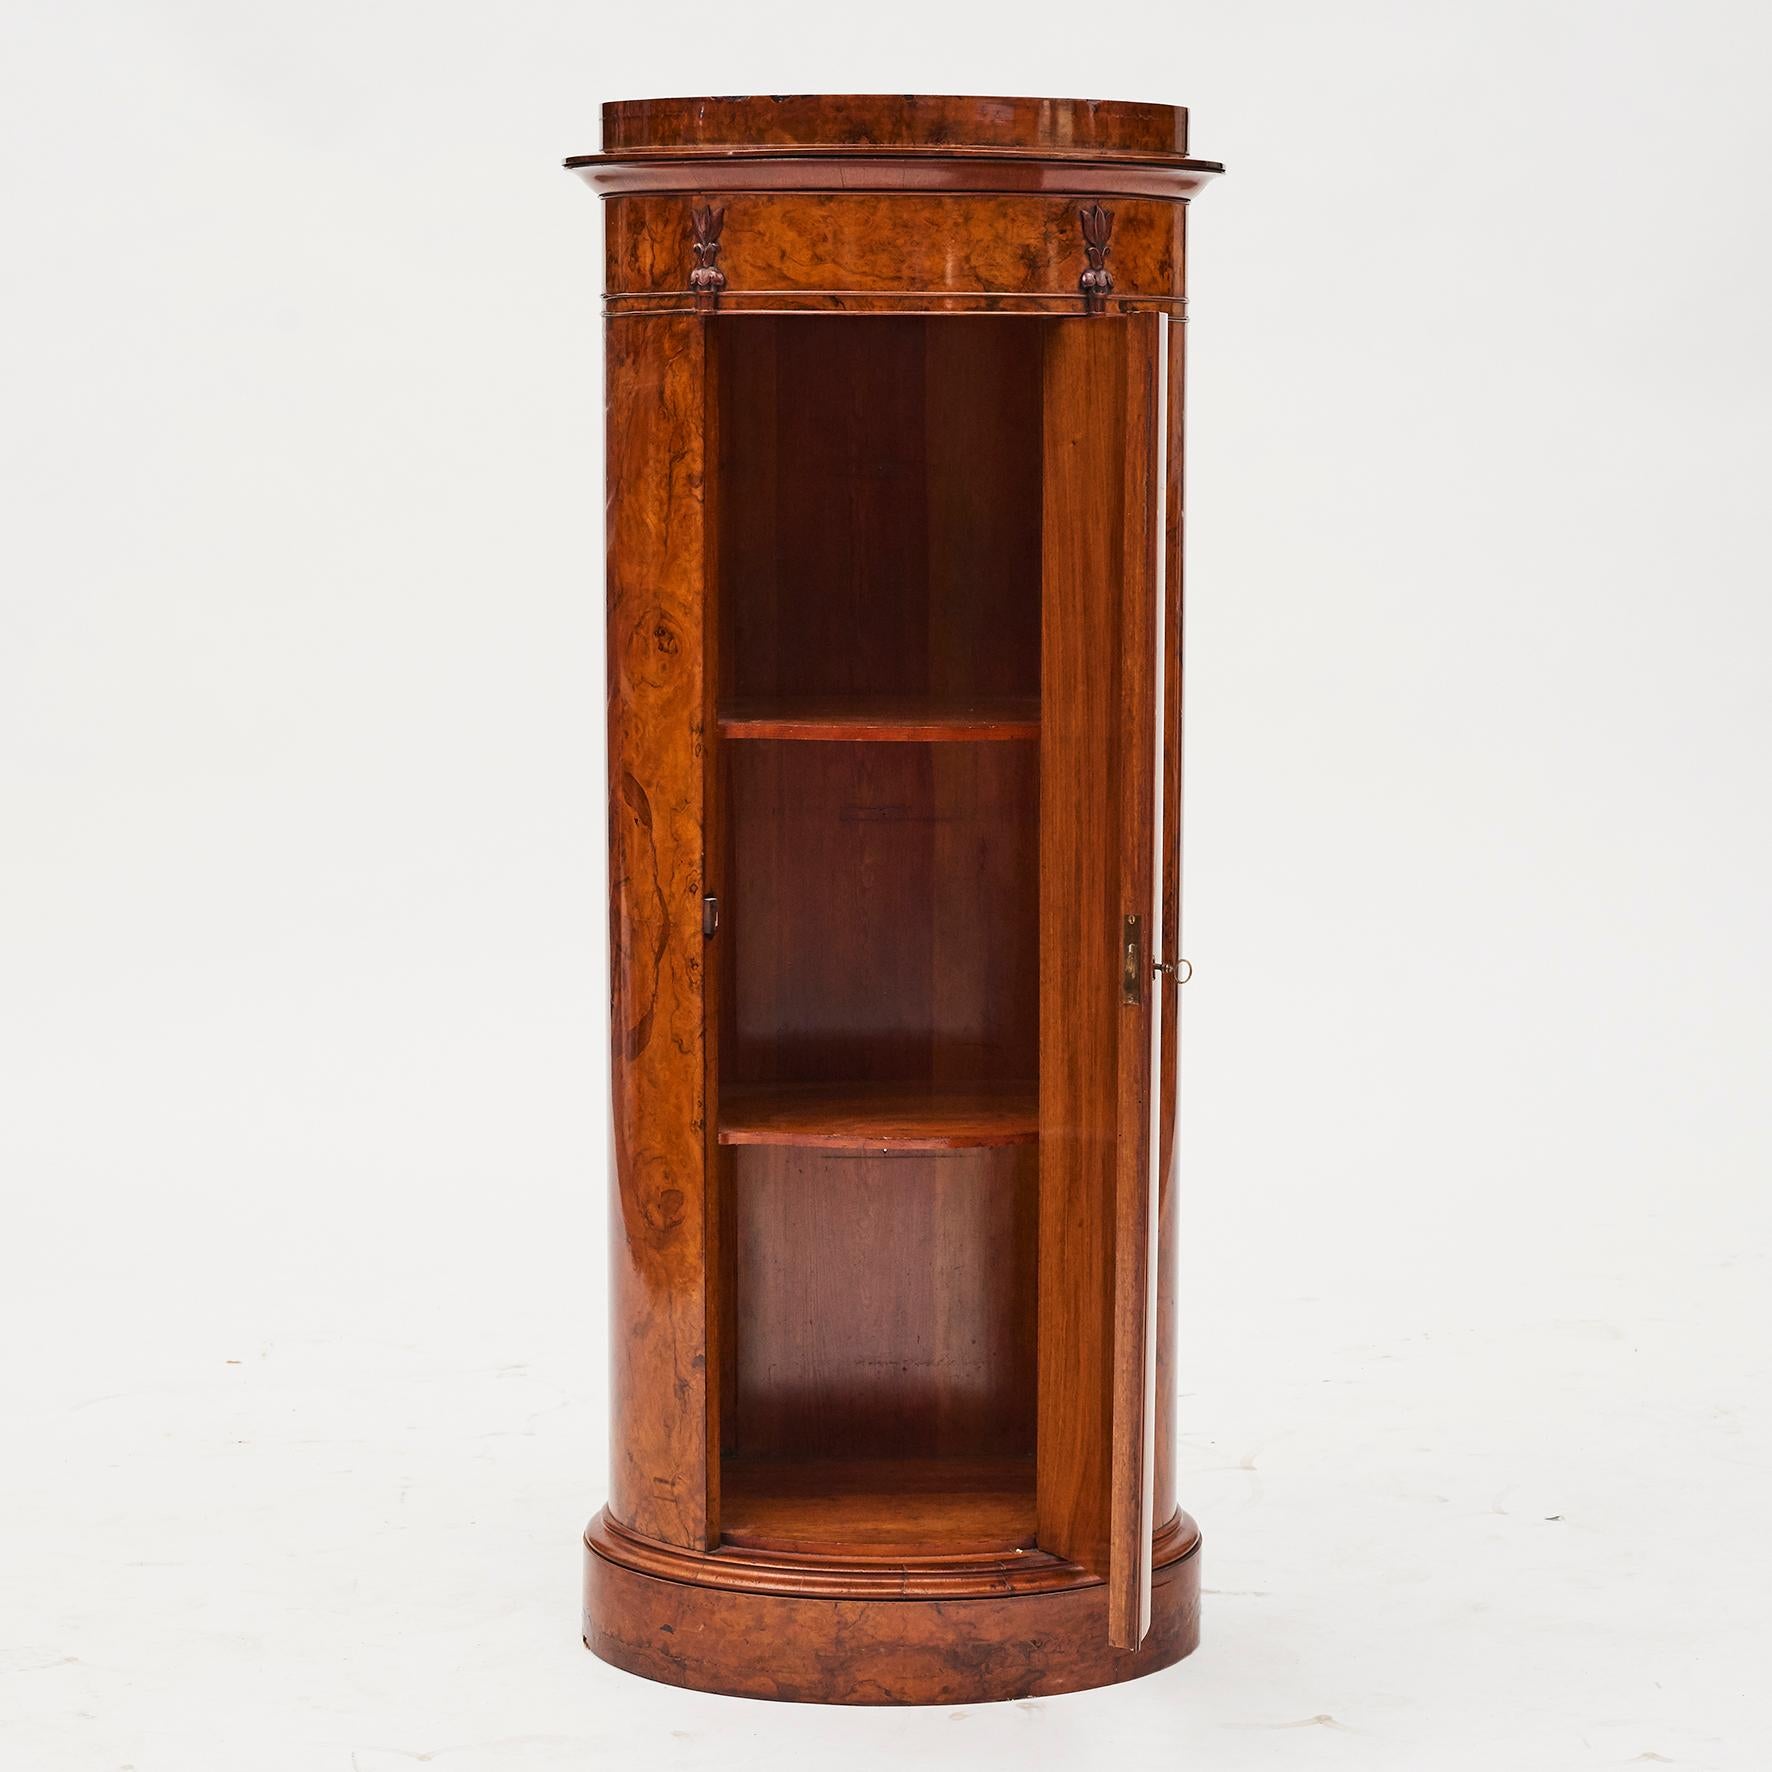 Empire Cylinder Burl Walnut Pedestal Cabinet, Copenhagen, 1830-1840